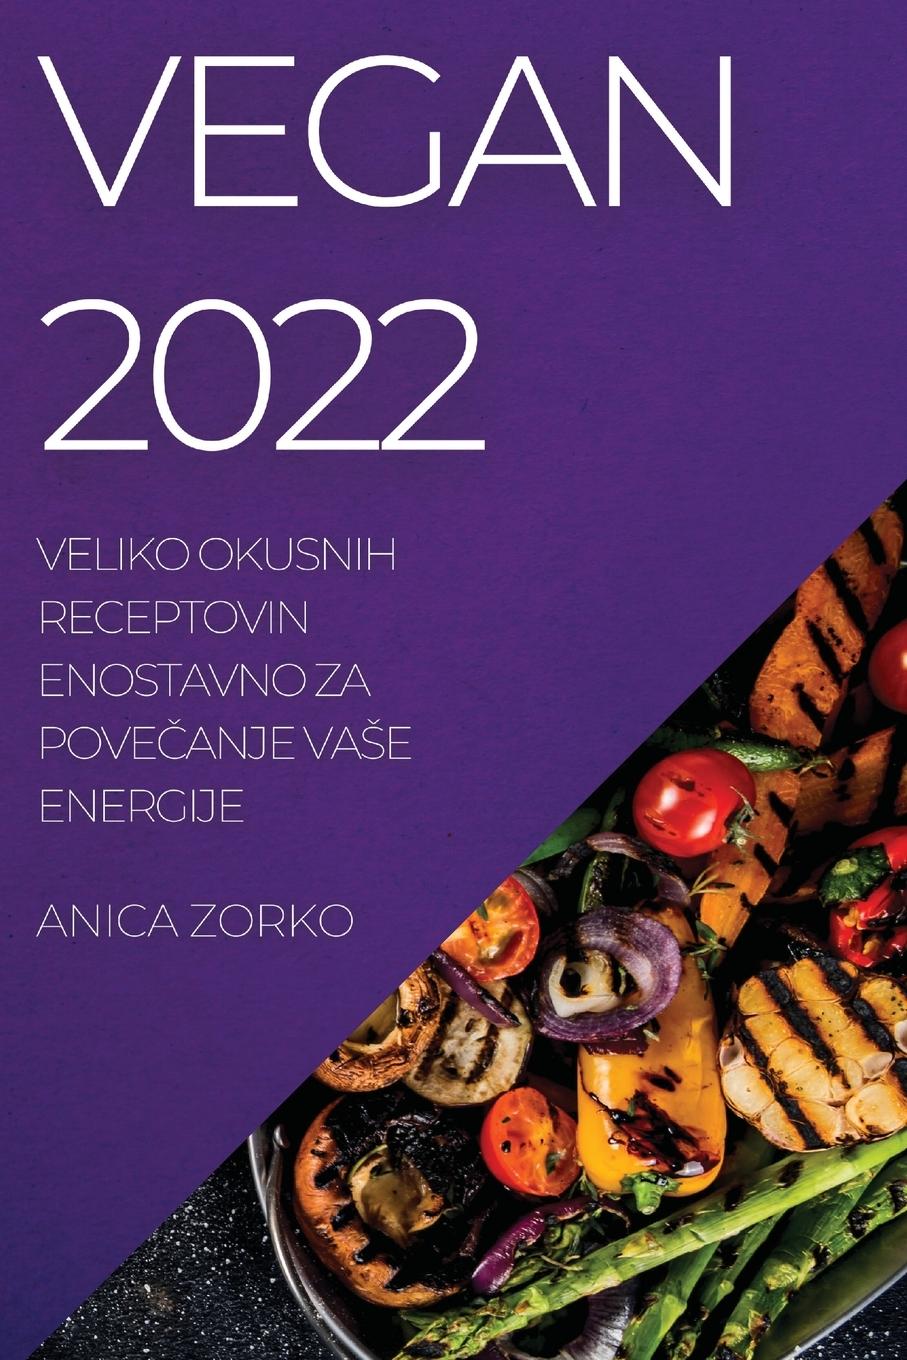 Book Vegan 2022 